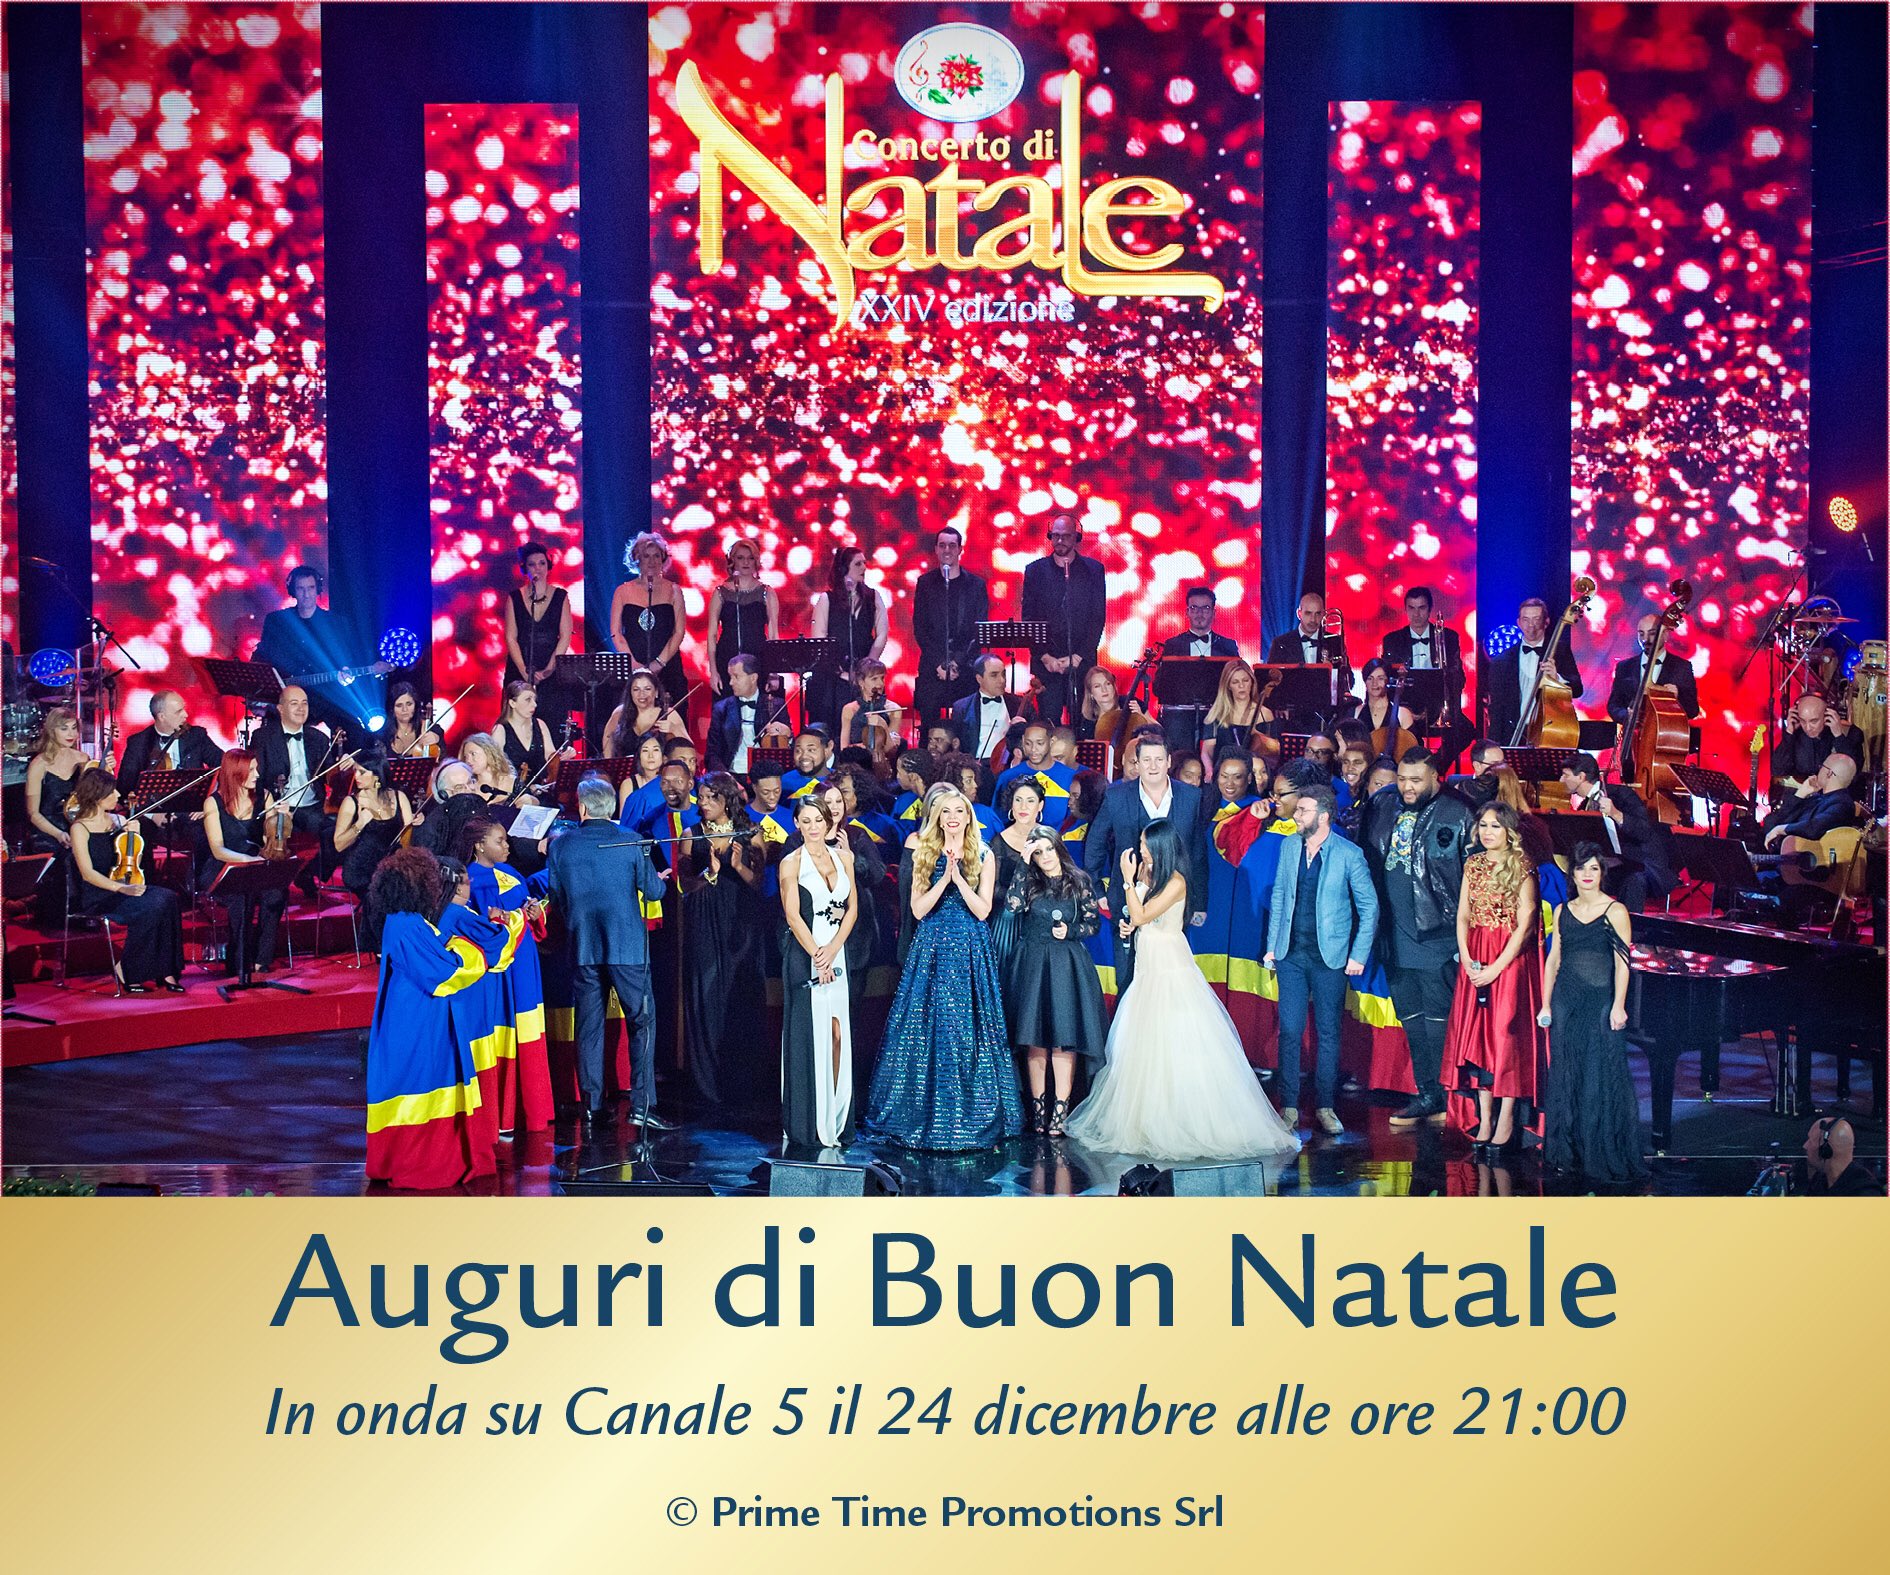 Auguri Di Natale Canale 5.Concerto Di Natale In Vaticano On Twitter